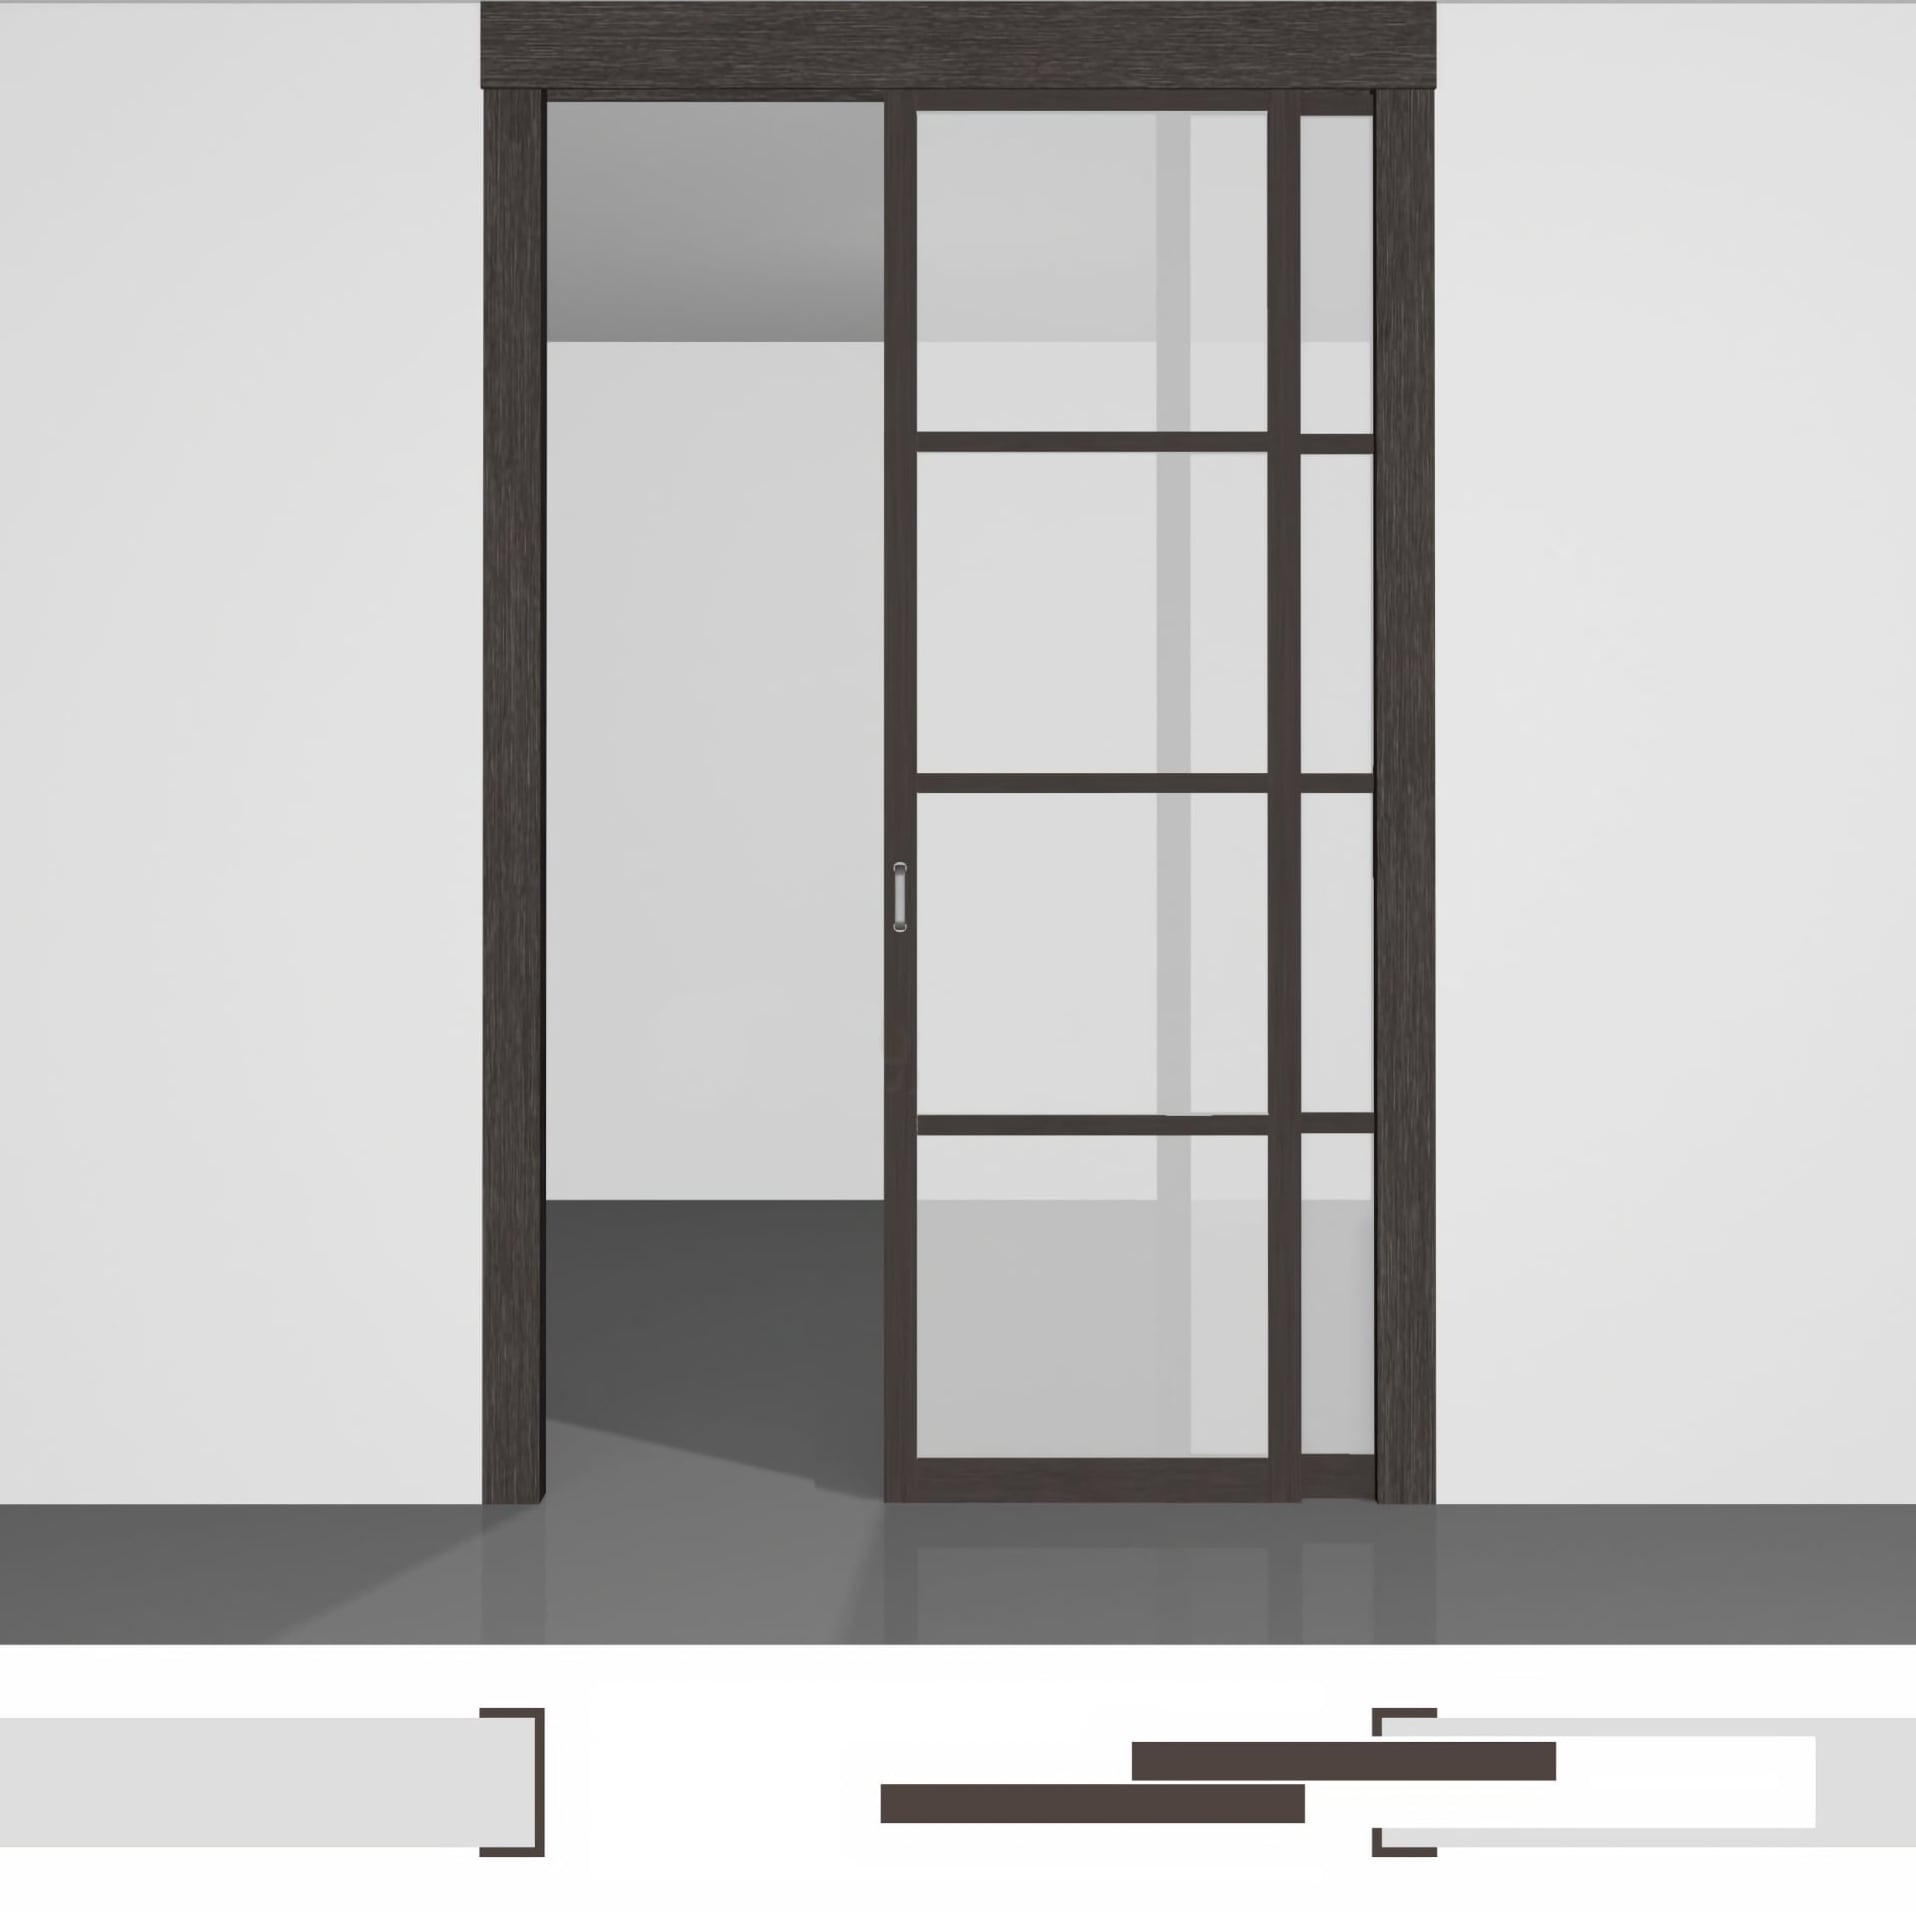 Міжкімнатні роздвижні двері - P02.2в • два полотна вистій до 2430 мм всередину стіни • екошпон